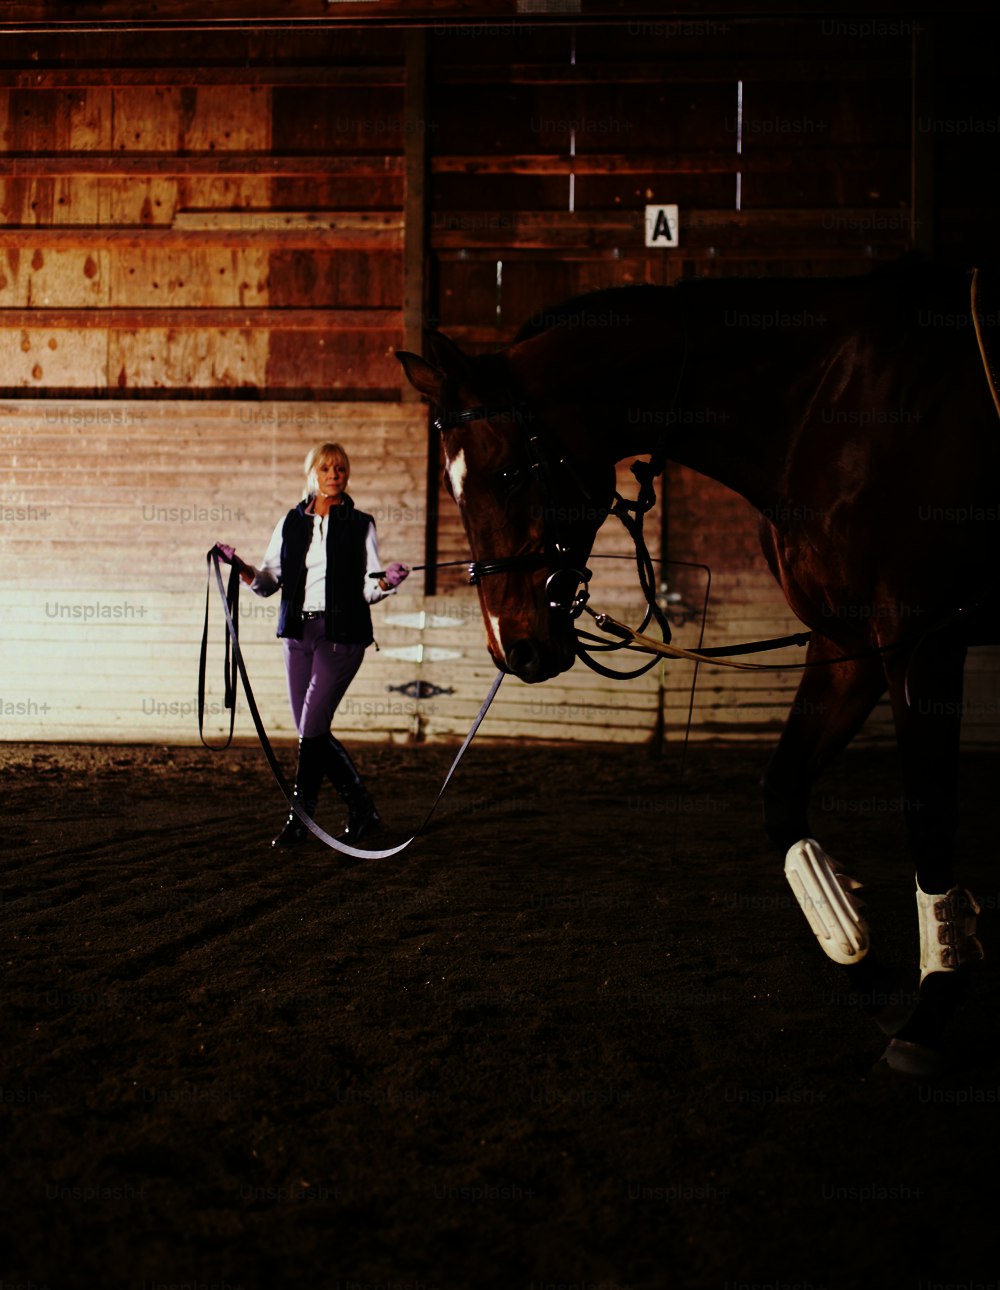 Eine Frau, die ein Pferd in einer Indoor-Arena führt